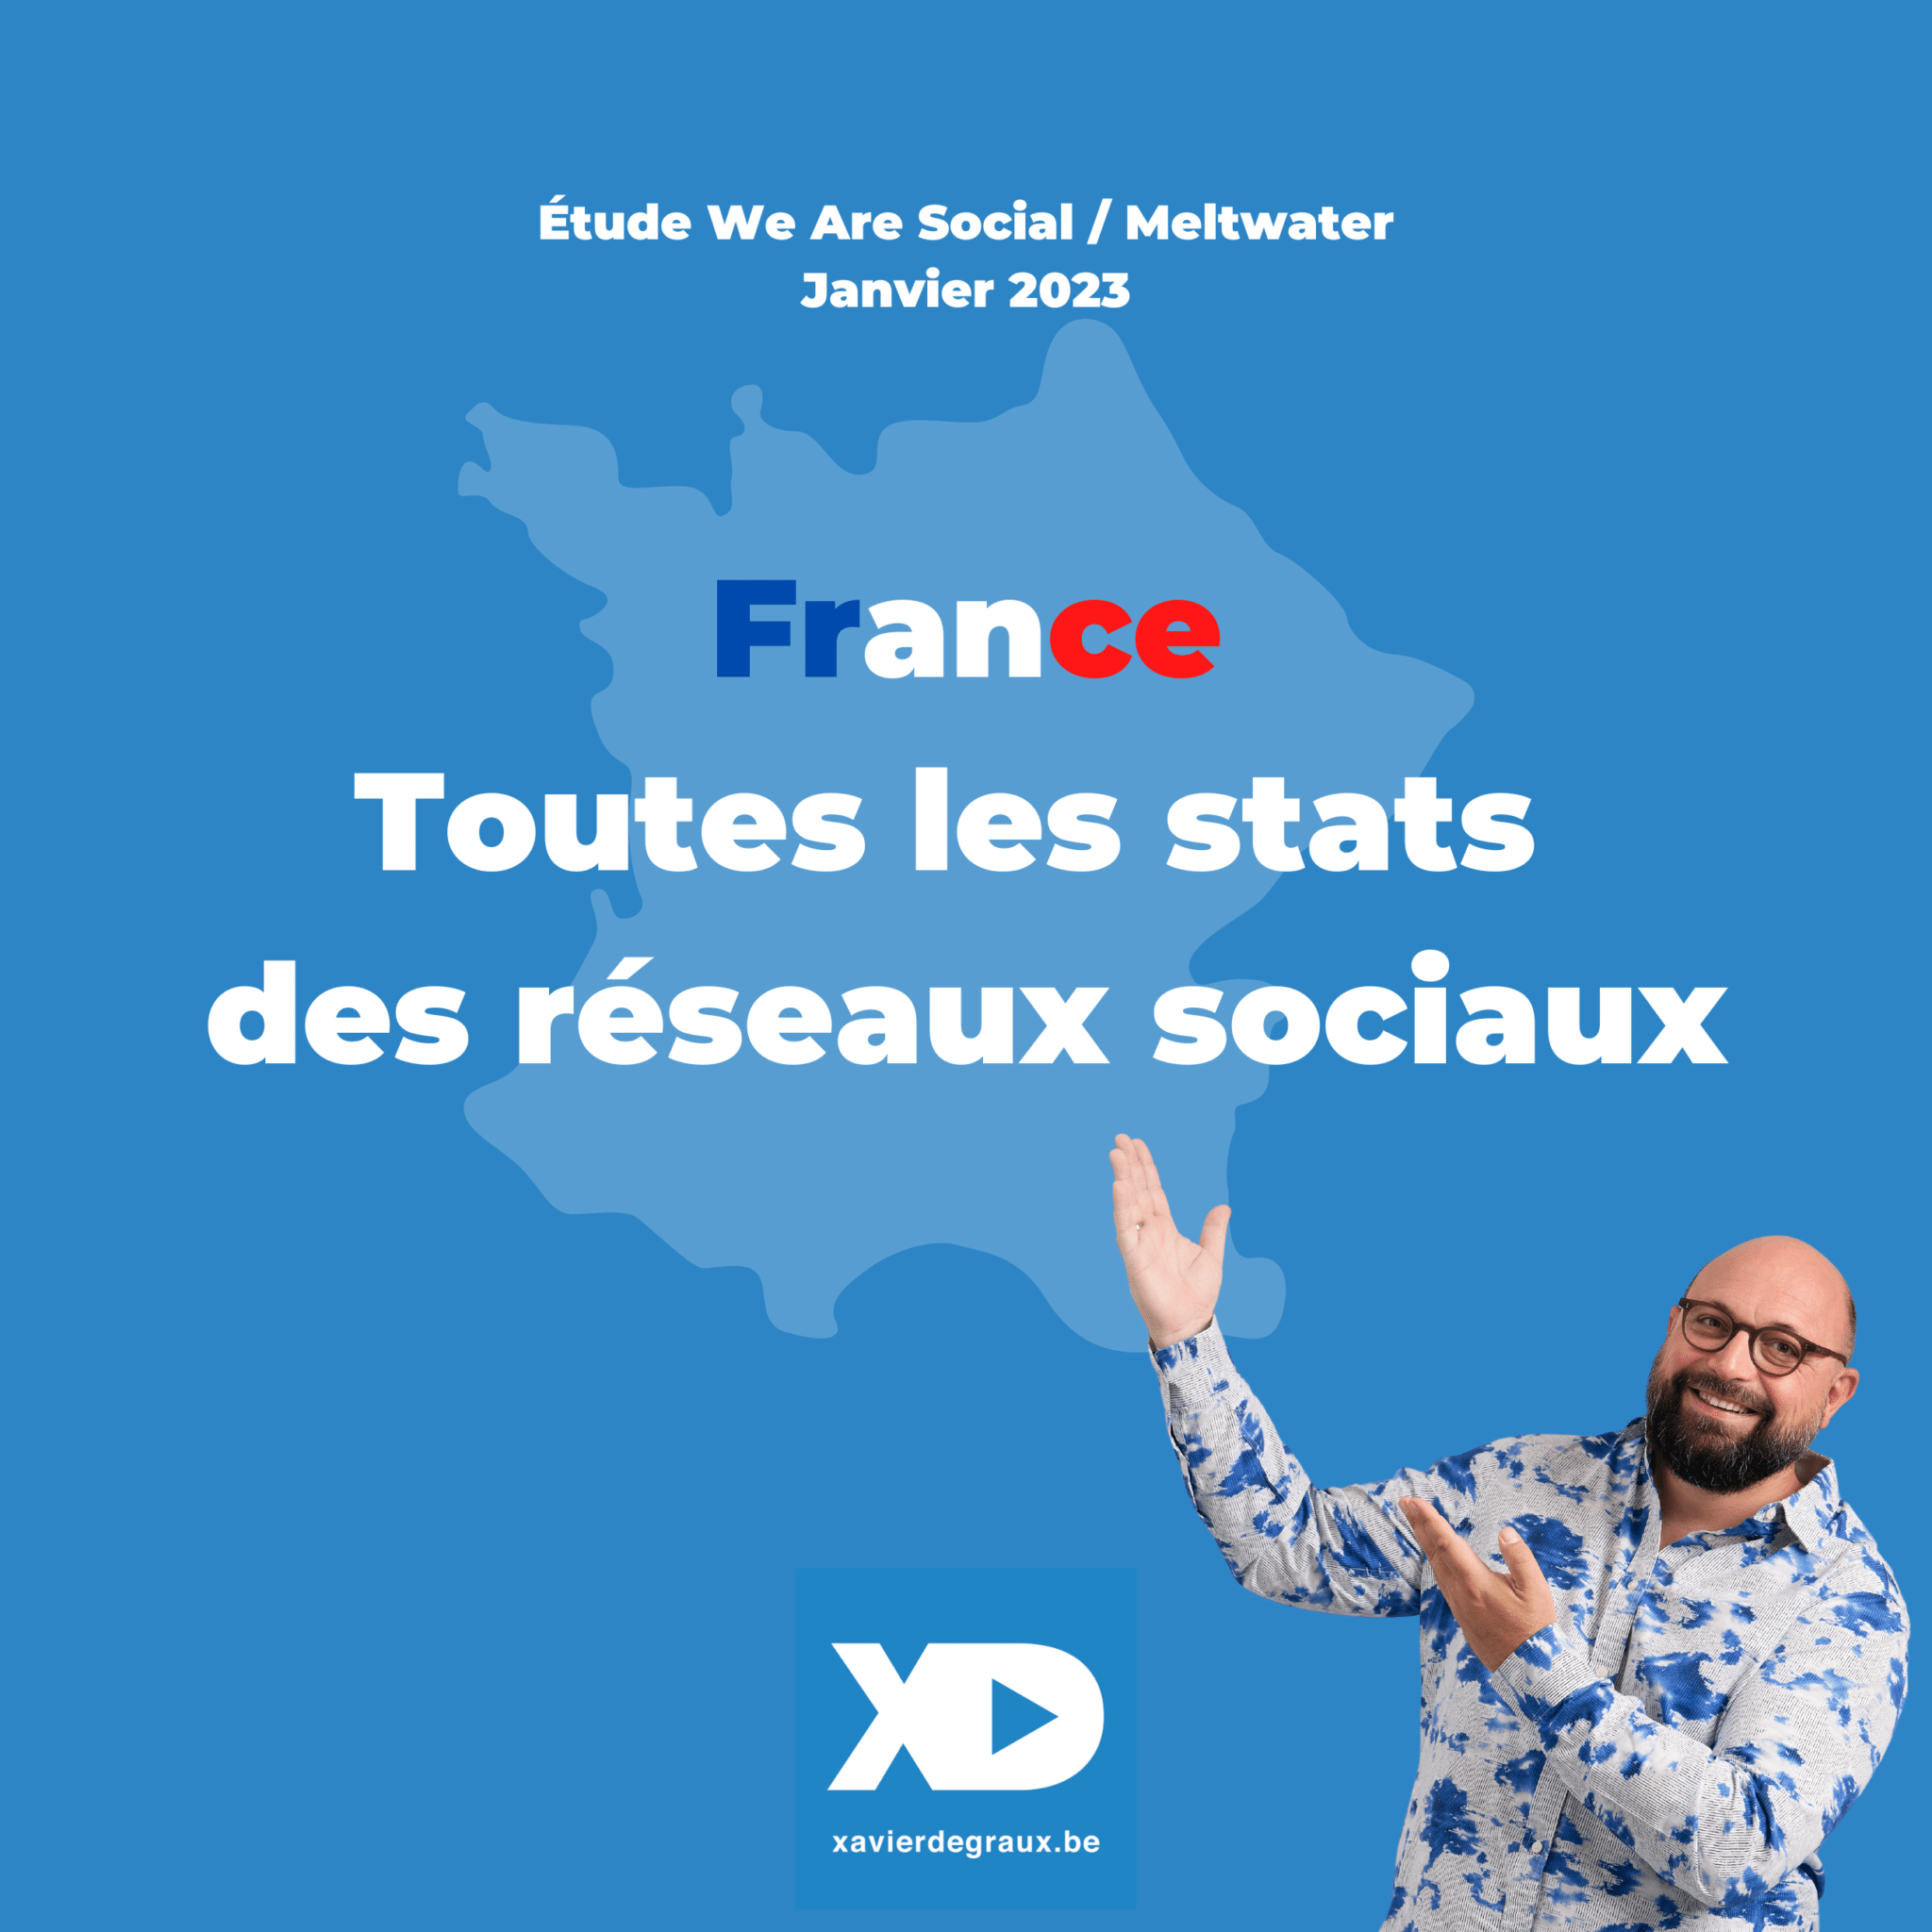 Réseaux sociaux en France : toutes les statistiques 2023 (étude)